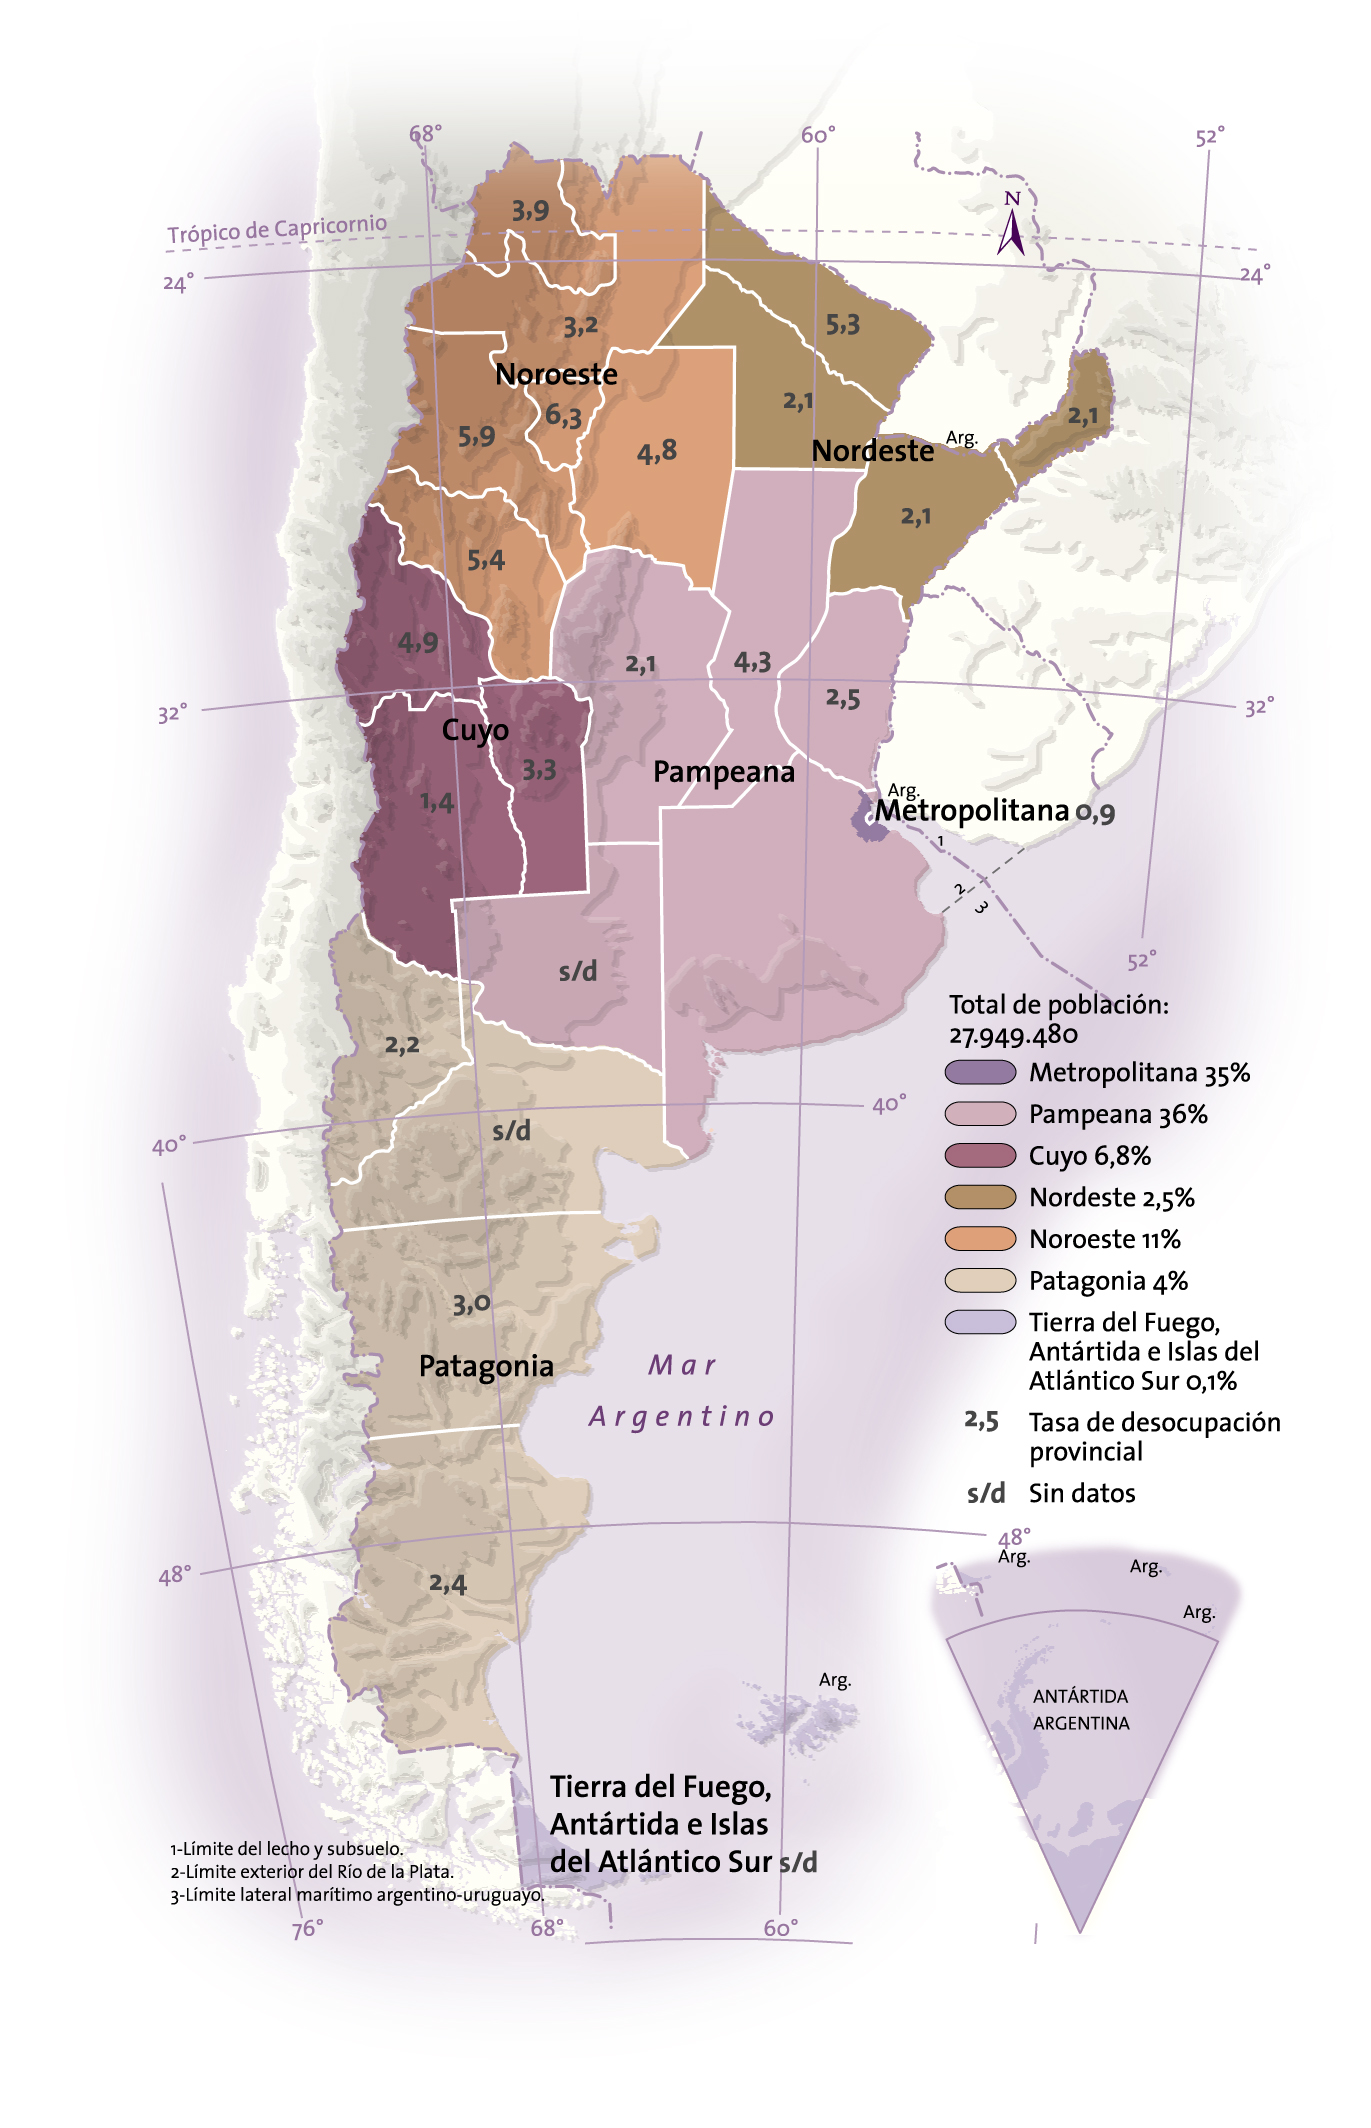 La Argentina: distribución de la población por regiones (en porcentajes) y tasa de desocupación en principales aglomerados urbanos